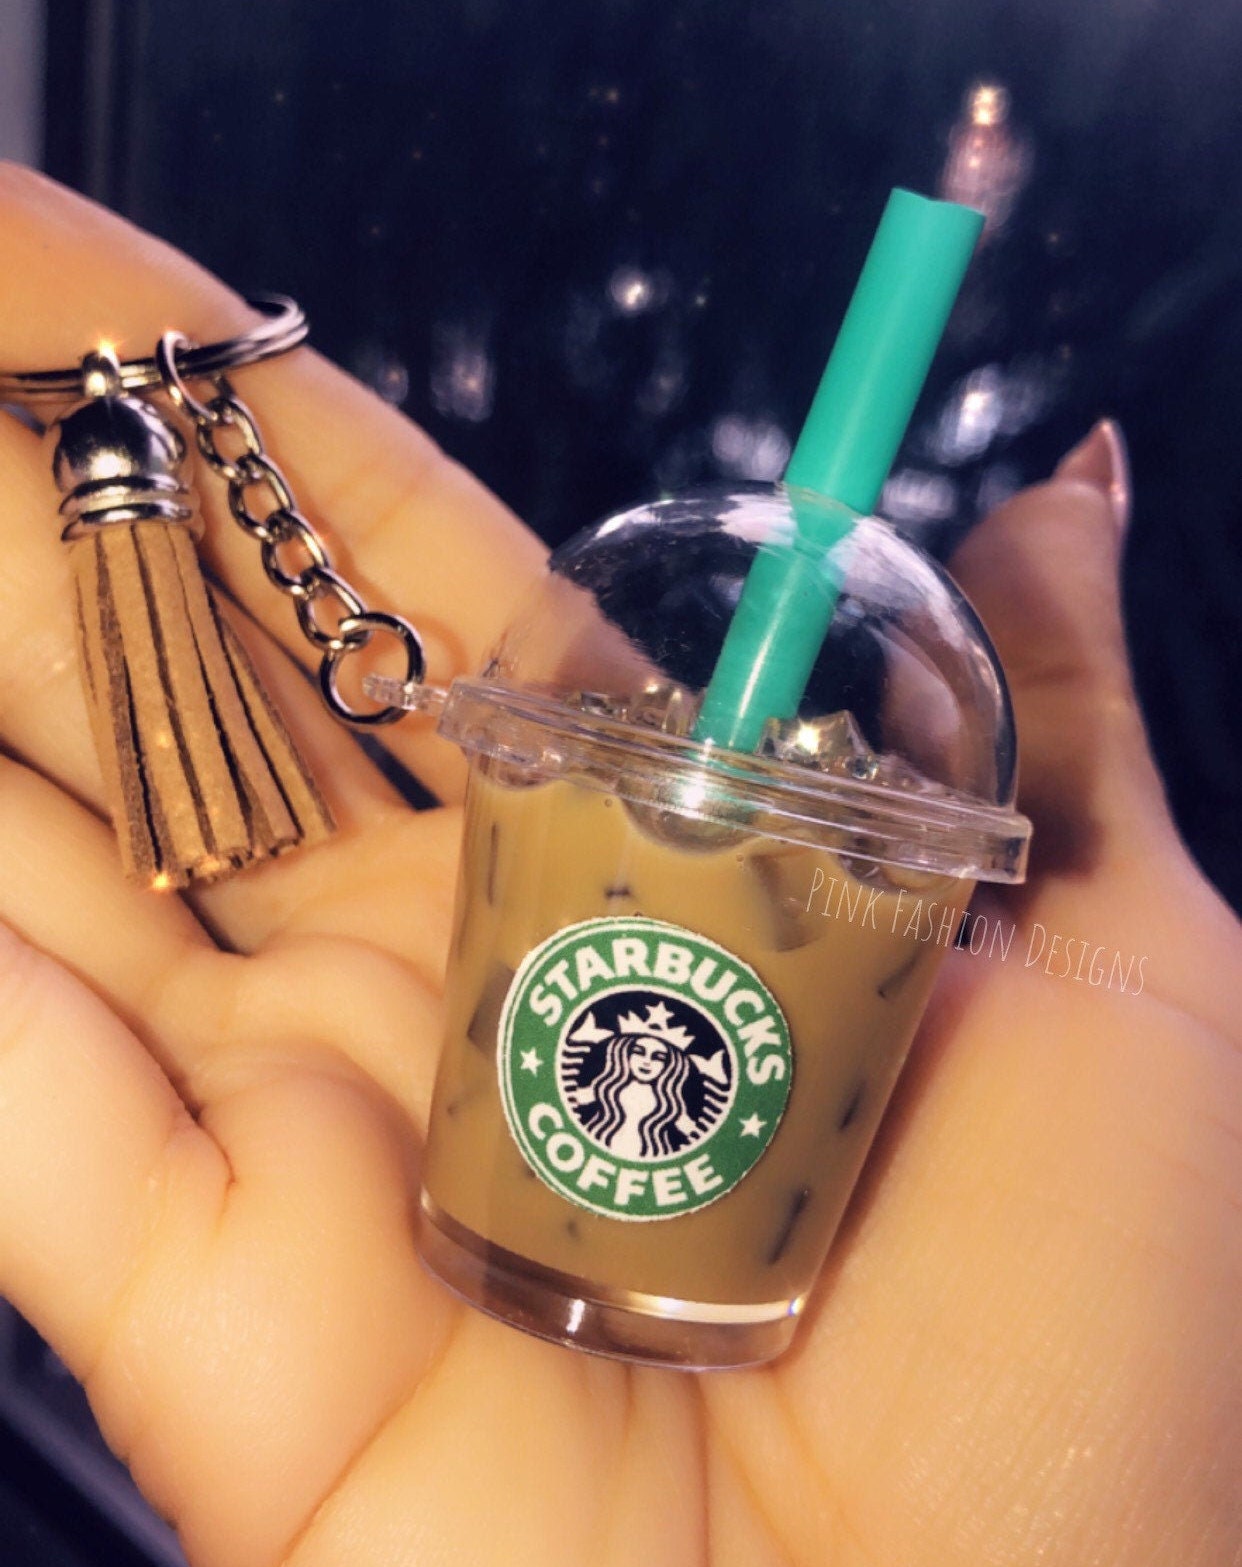 Starbucks Inspired Iced Latte Resin Keychain Handmade New